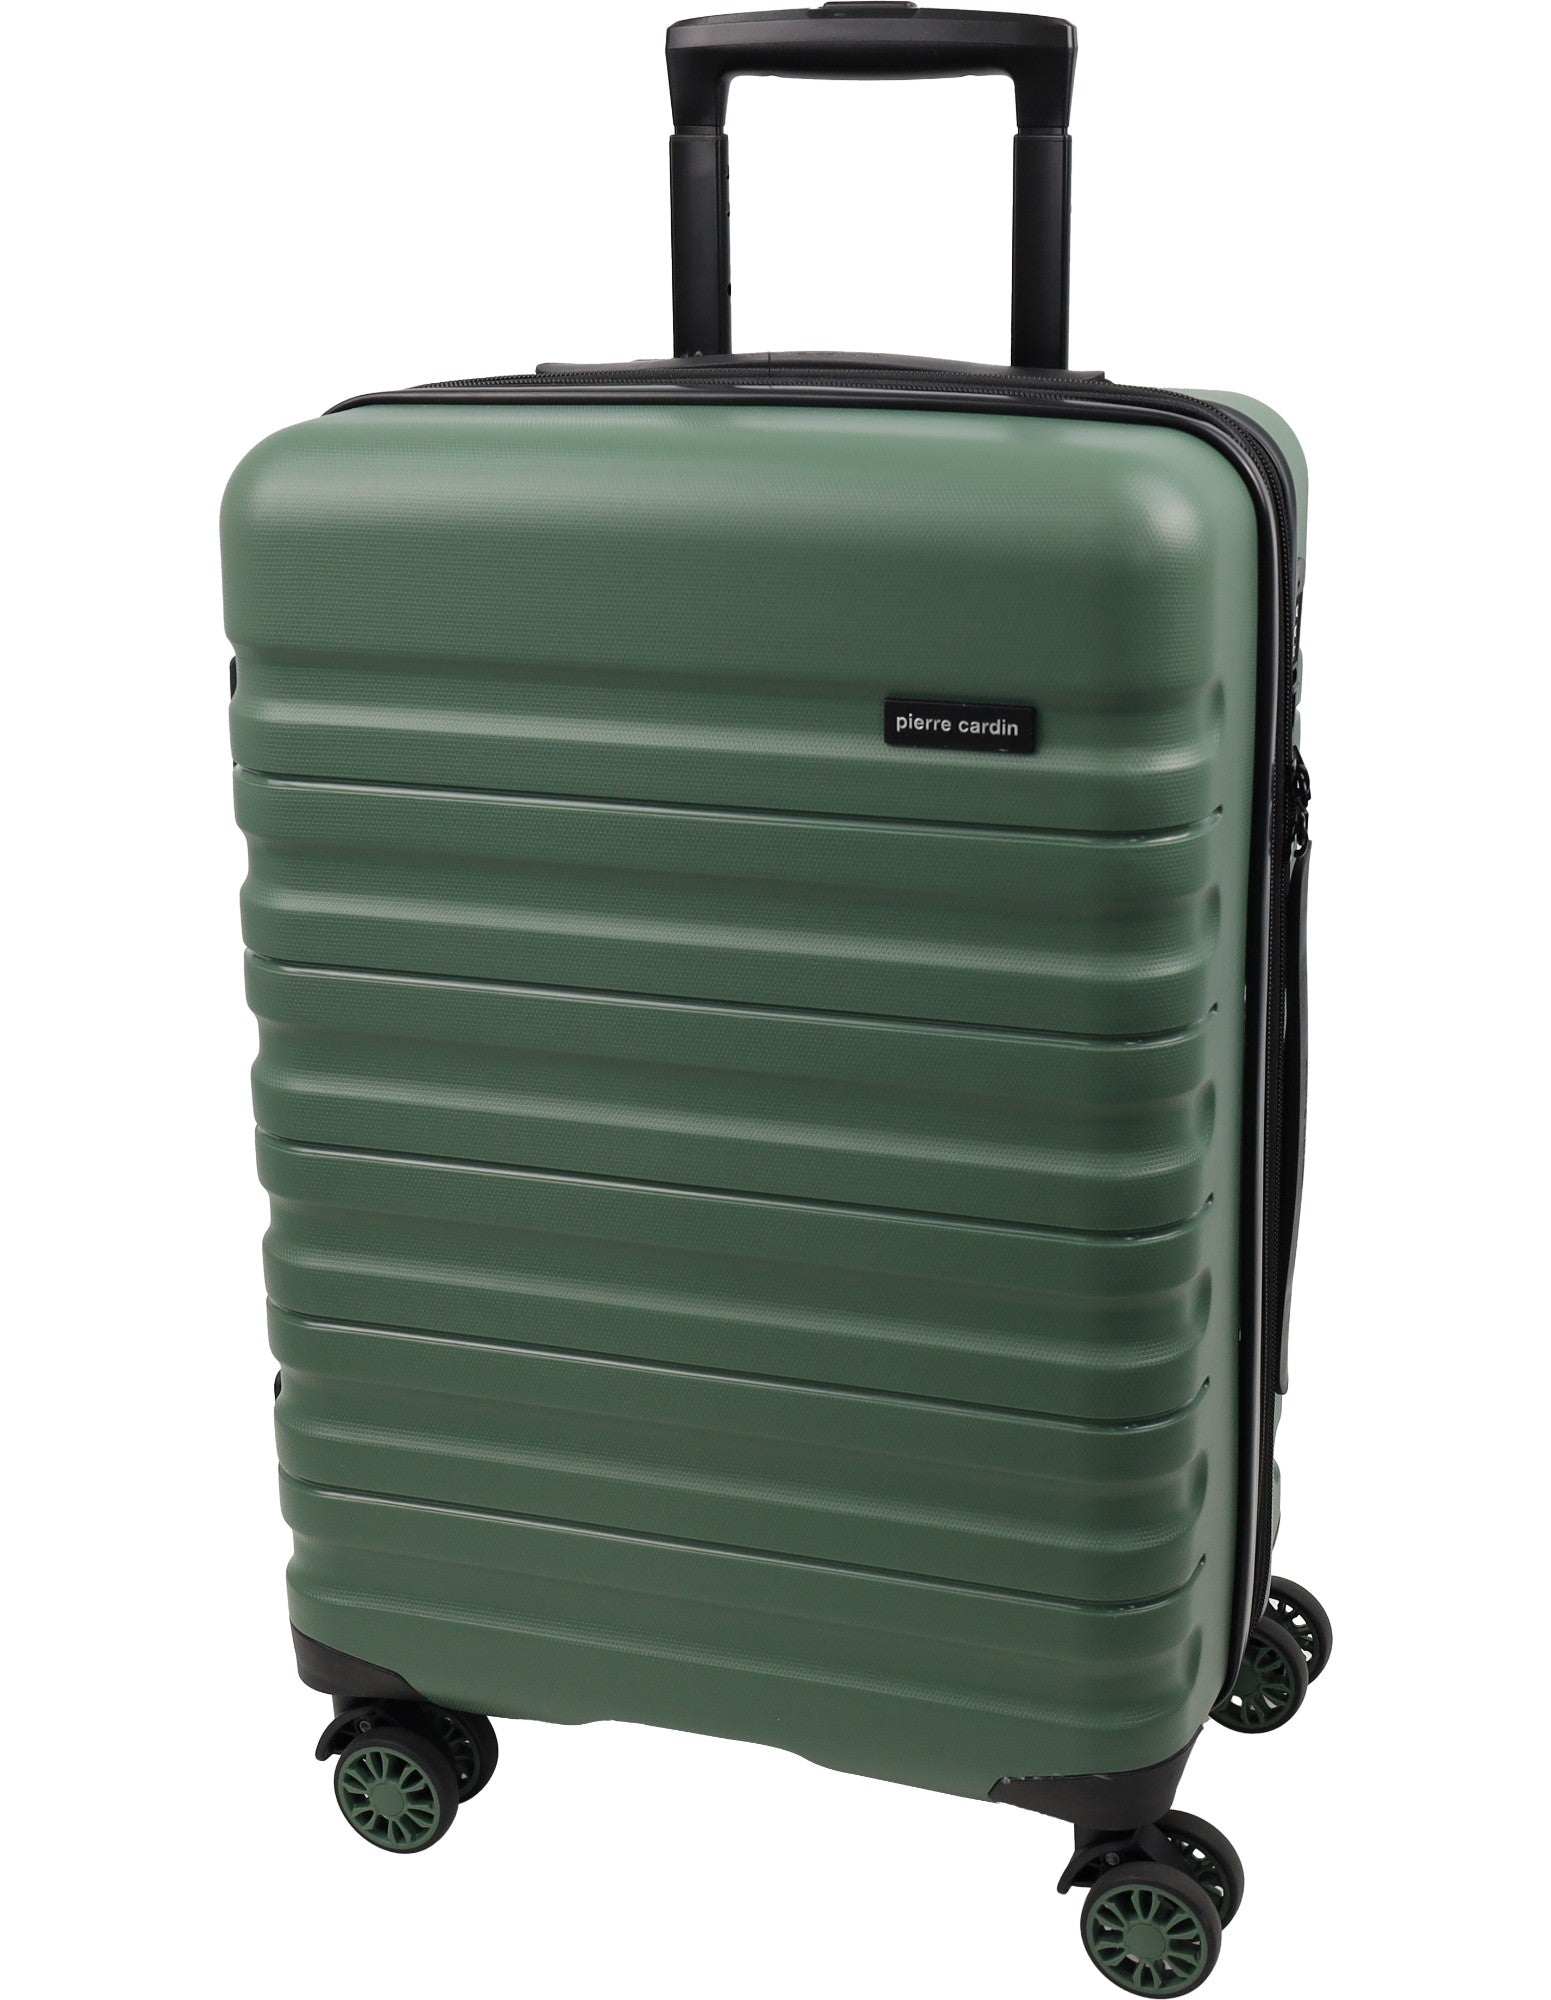 Pierre Cardin 54cm CABIN Hard Shell Suitcase in Moss